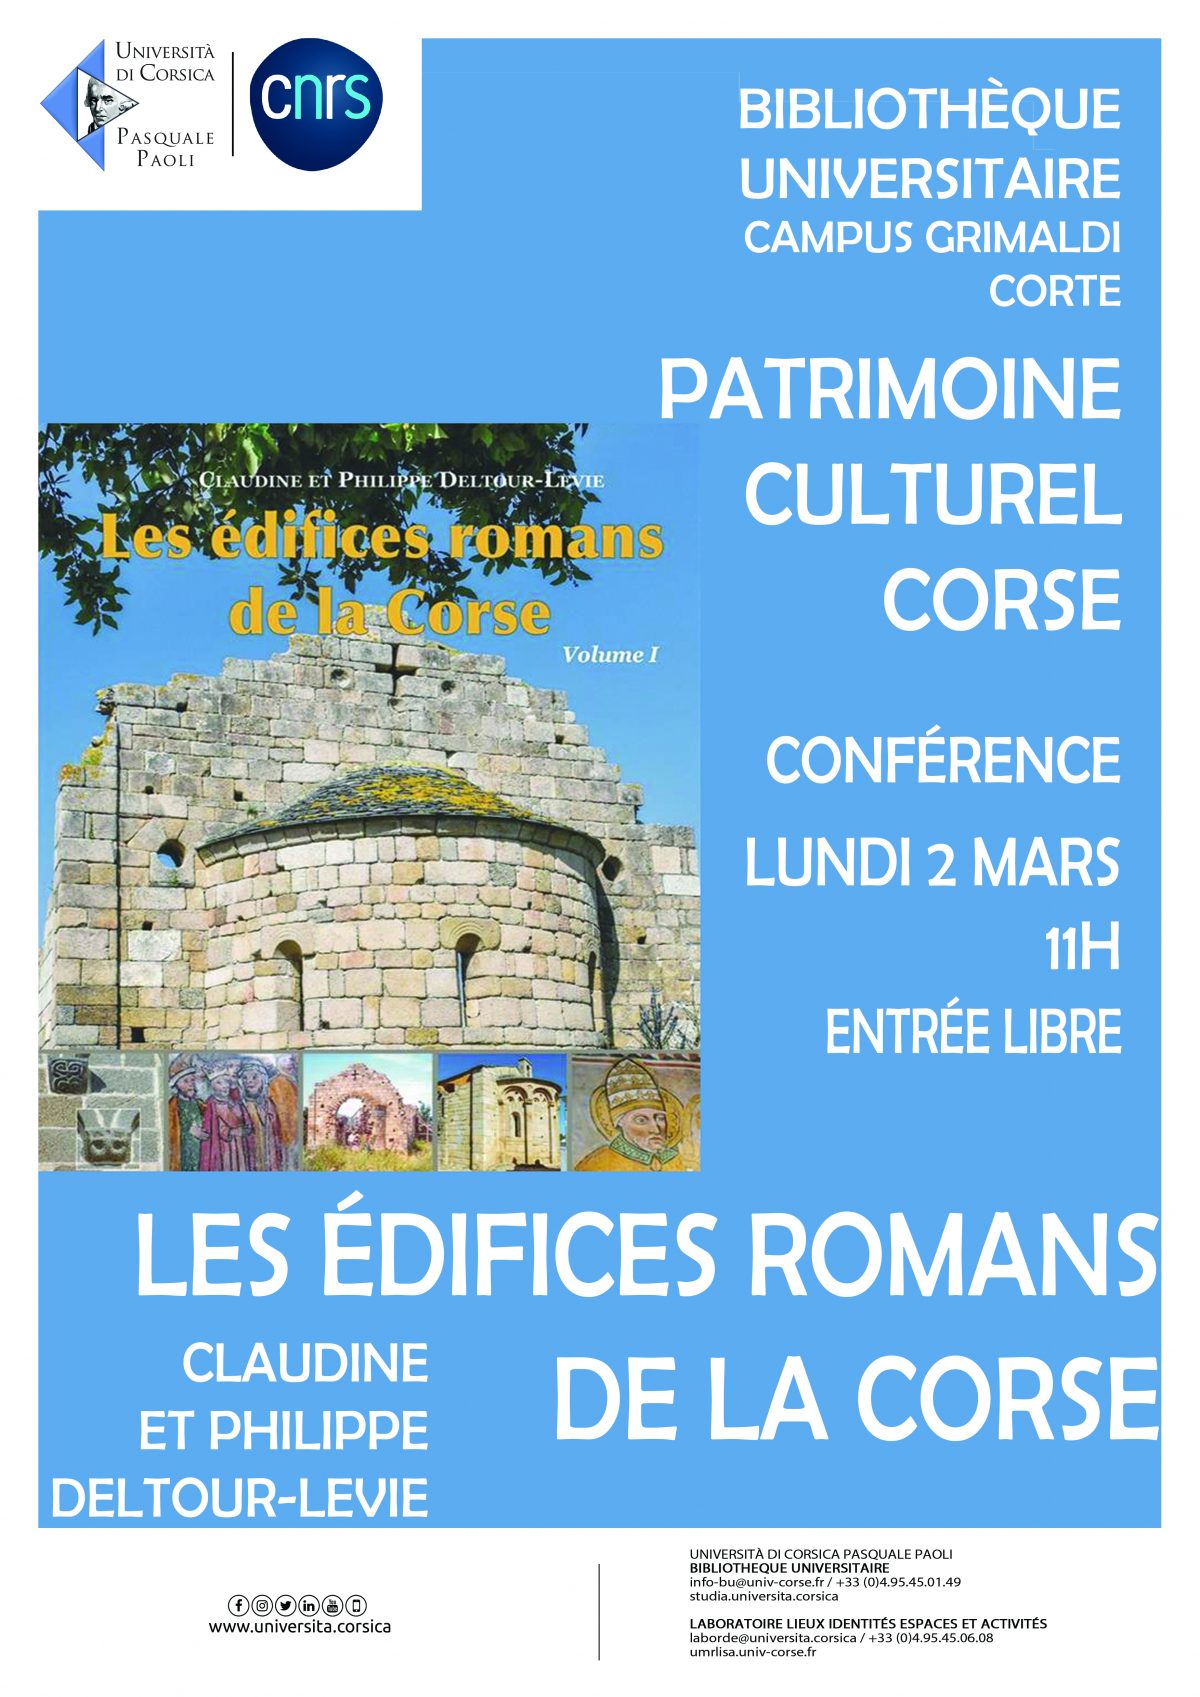 Patrimoine culturel corse – Conférence « Les édifices romans de la Corse »